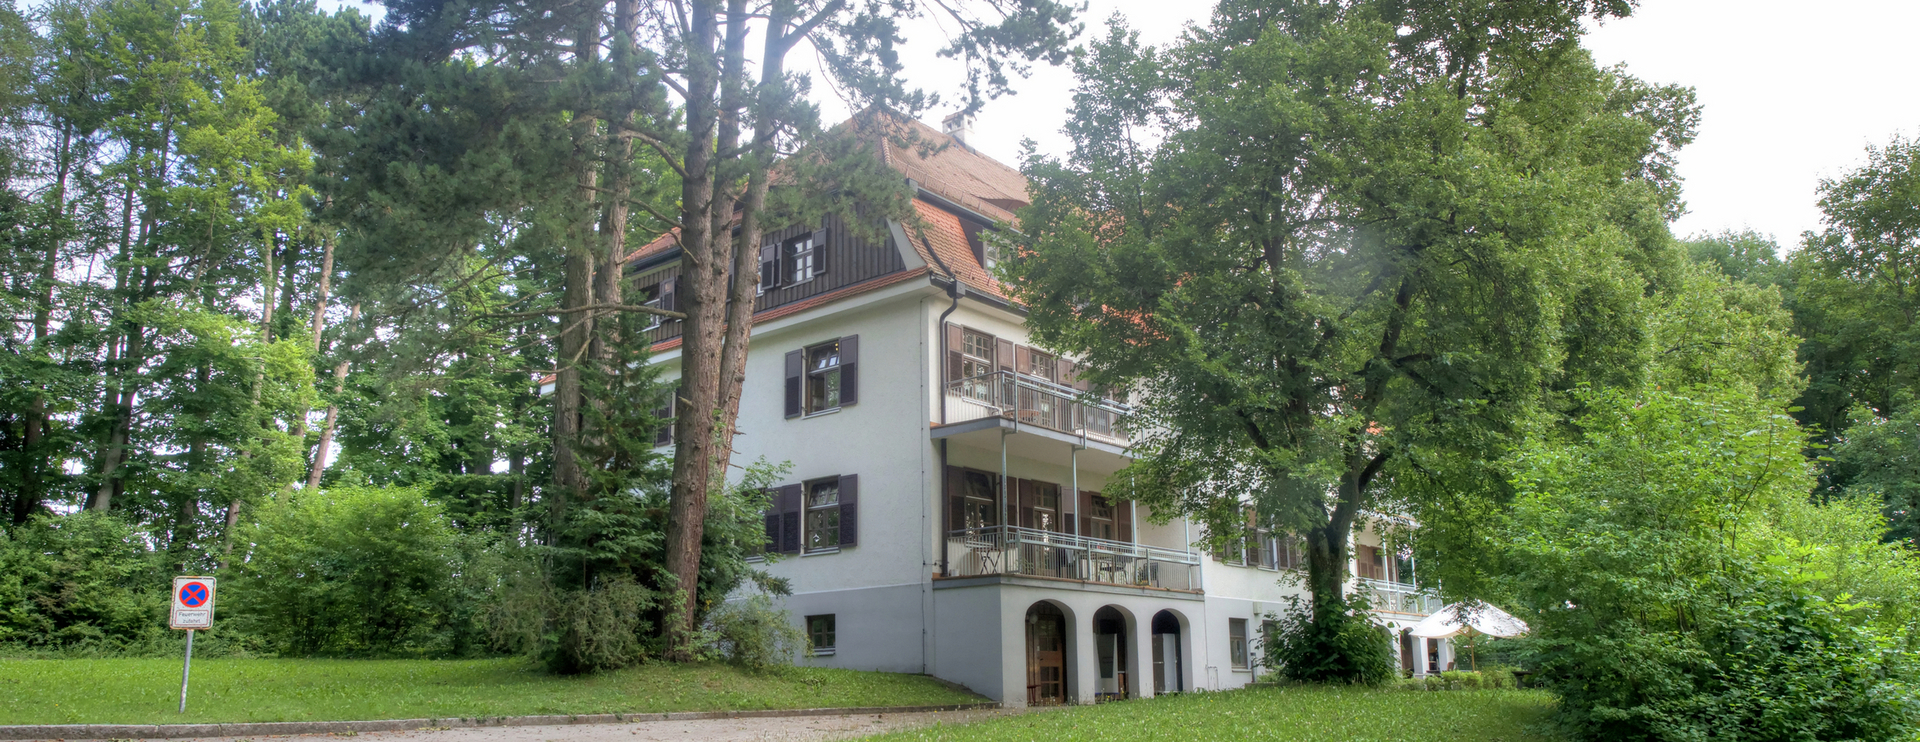 Das Landhaus am Kaiserweiher.